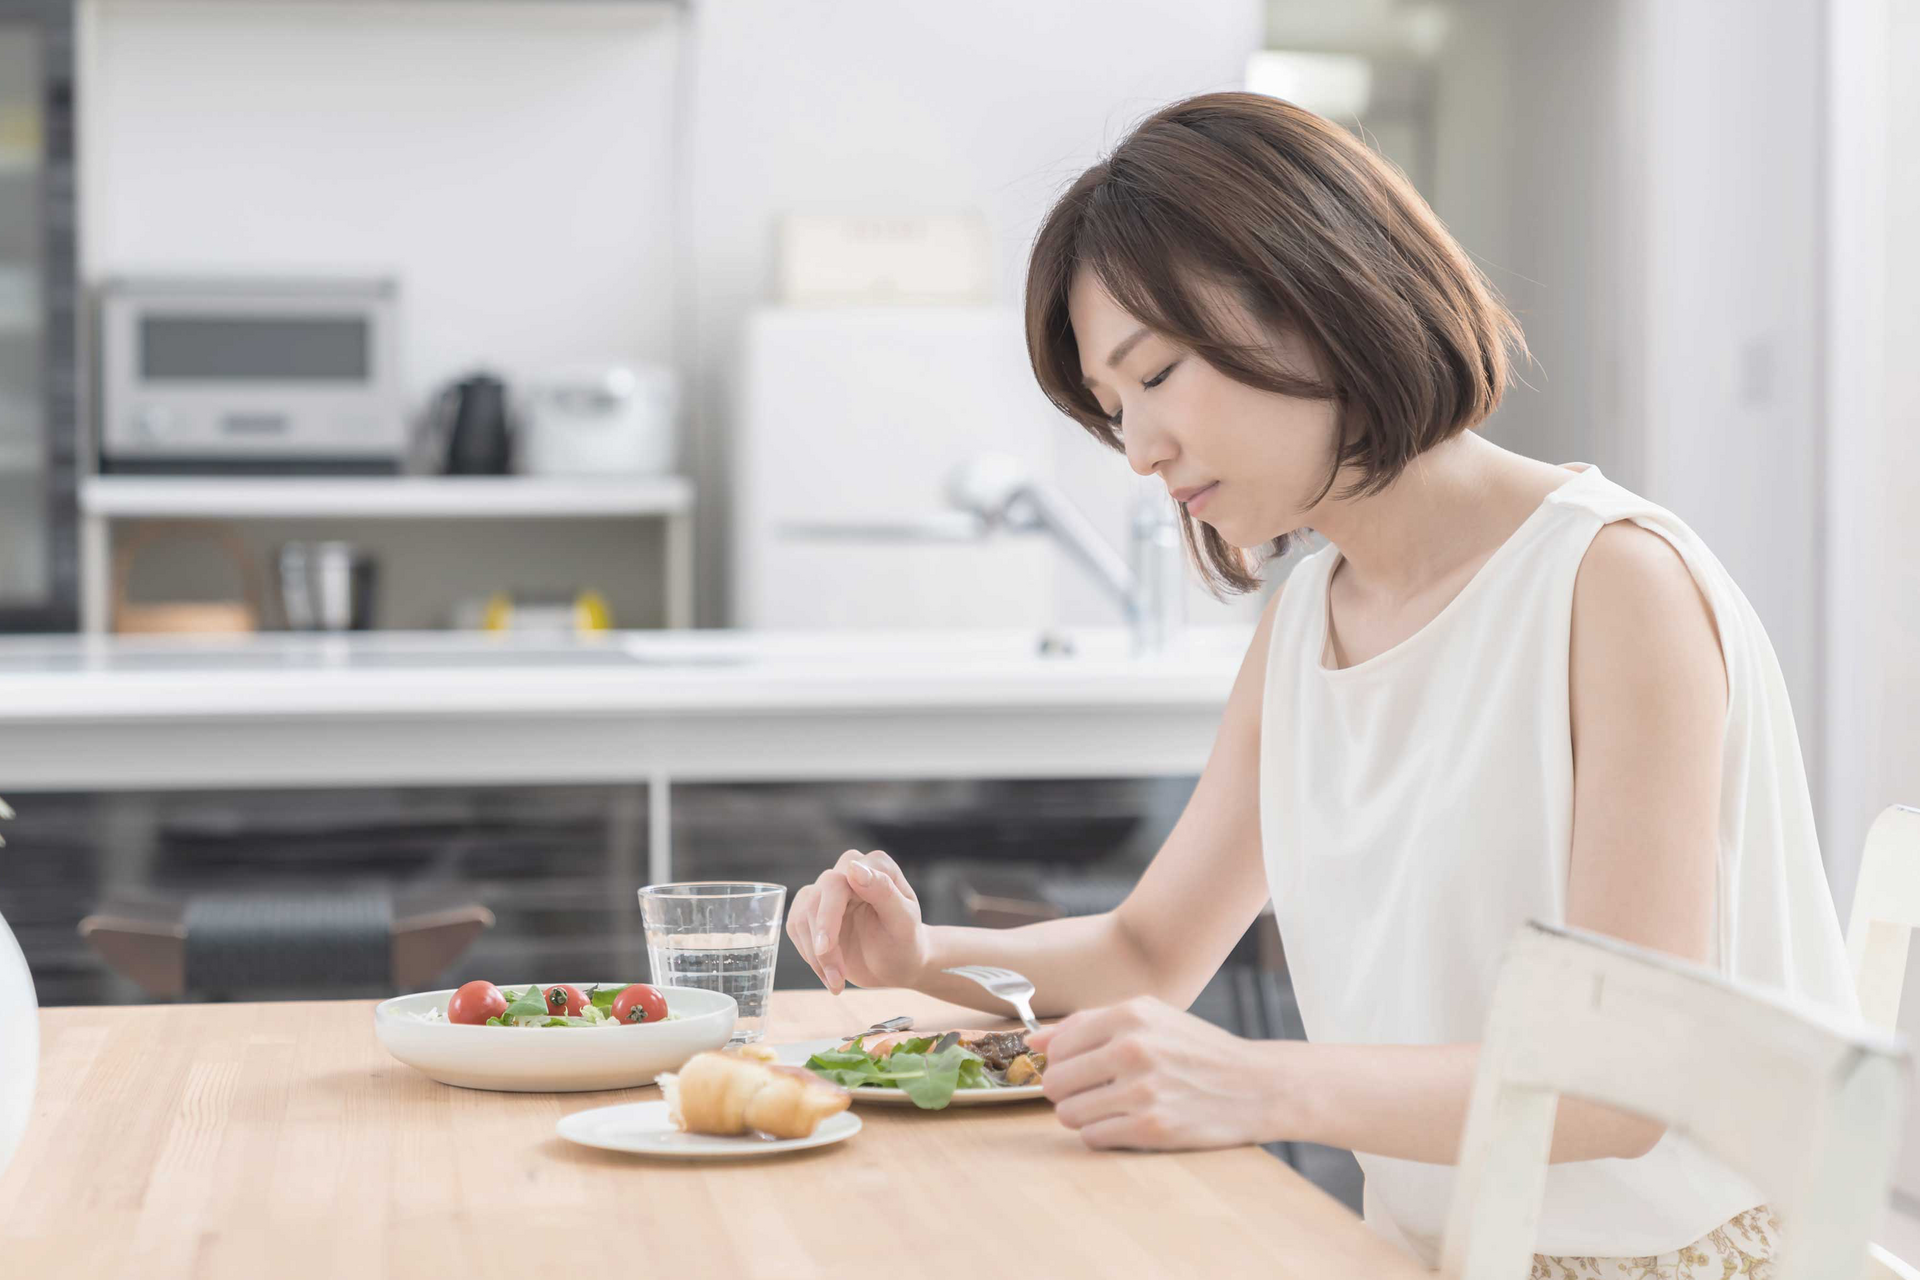 Eine Frau sitzt vor Tellern mit Essen und schaut zweifelnd.